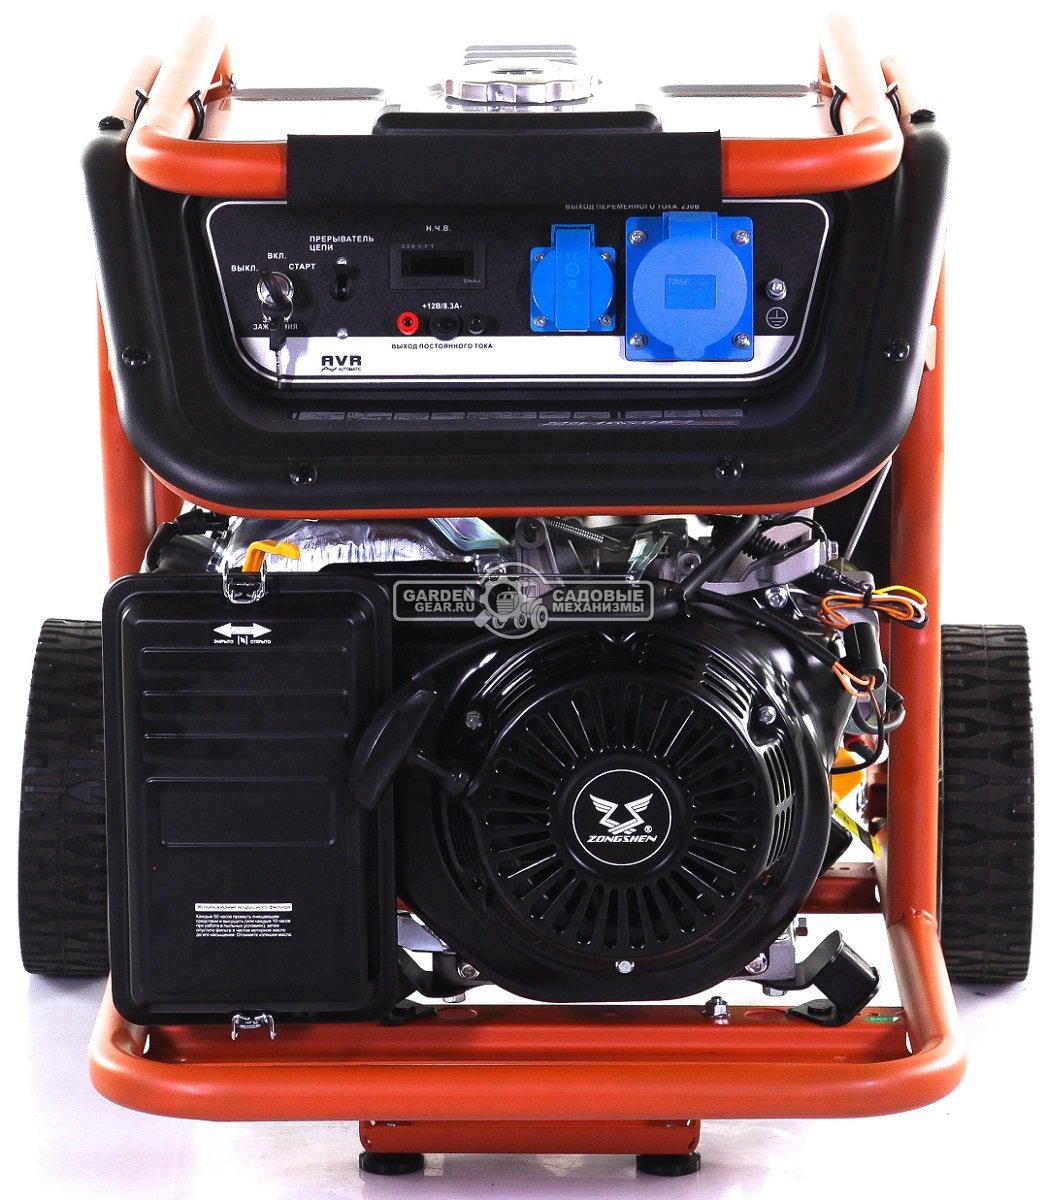 Бензиновый генератор Zongshen Premium KB 6000 E (PRC, 420 см3, 5.0/5.5 кВт, 32 л, электростарт, колеса, 87 кг)